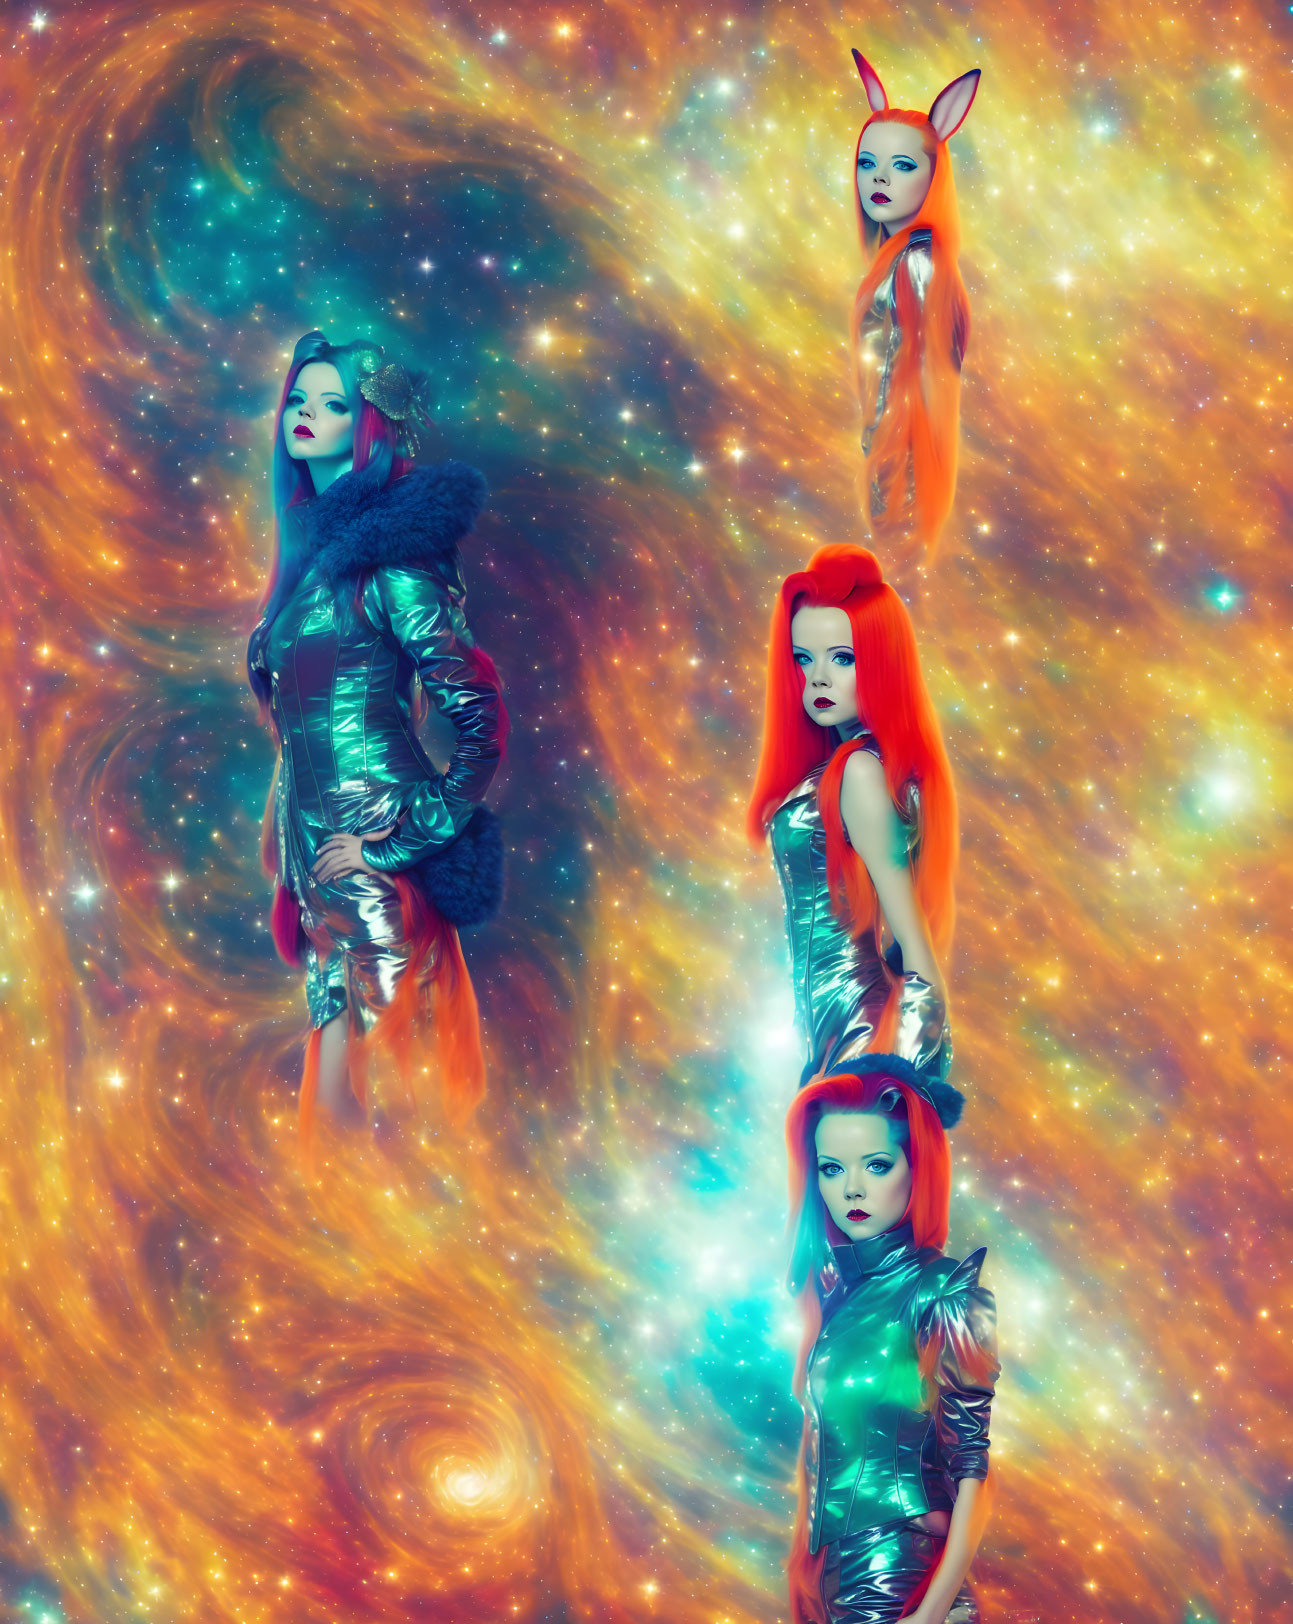 Four women in futuristic attire against galaxy backdrop